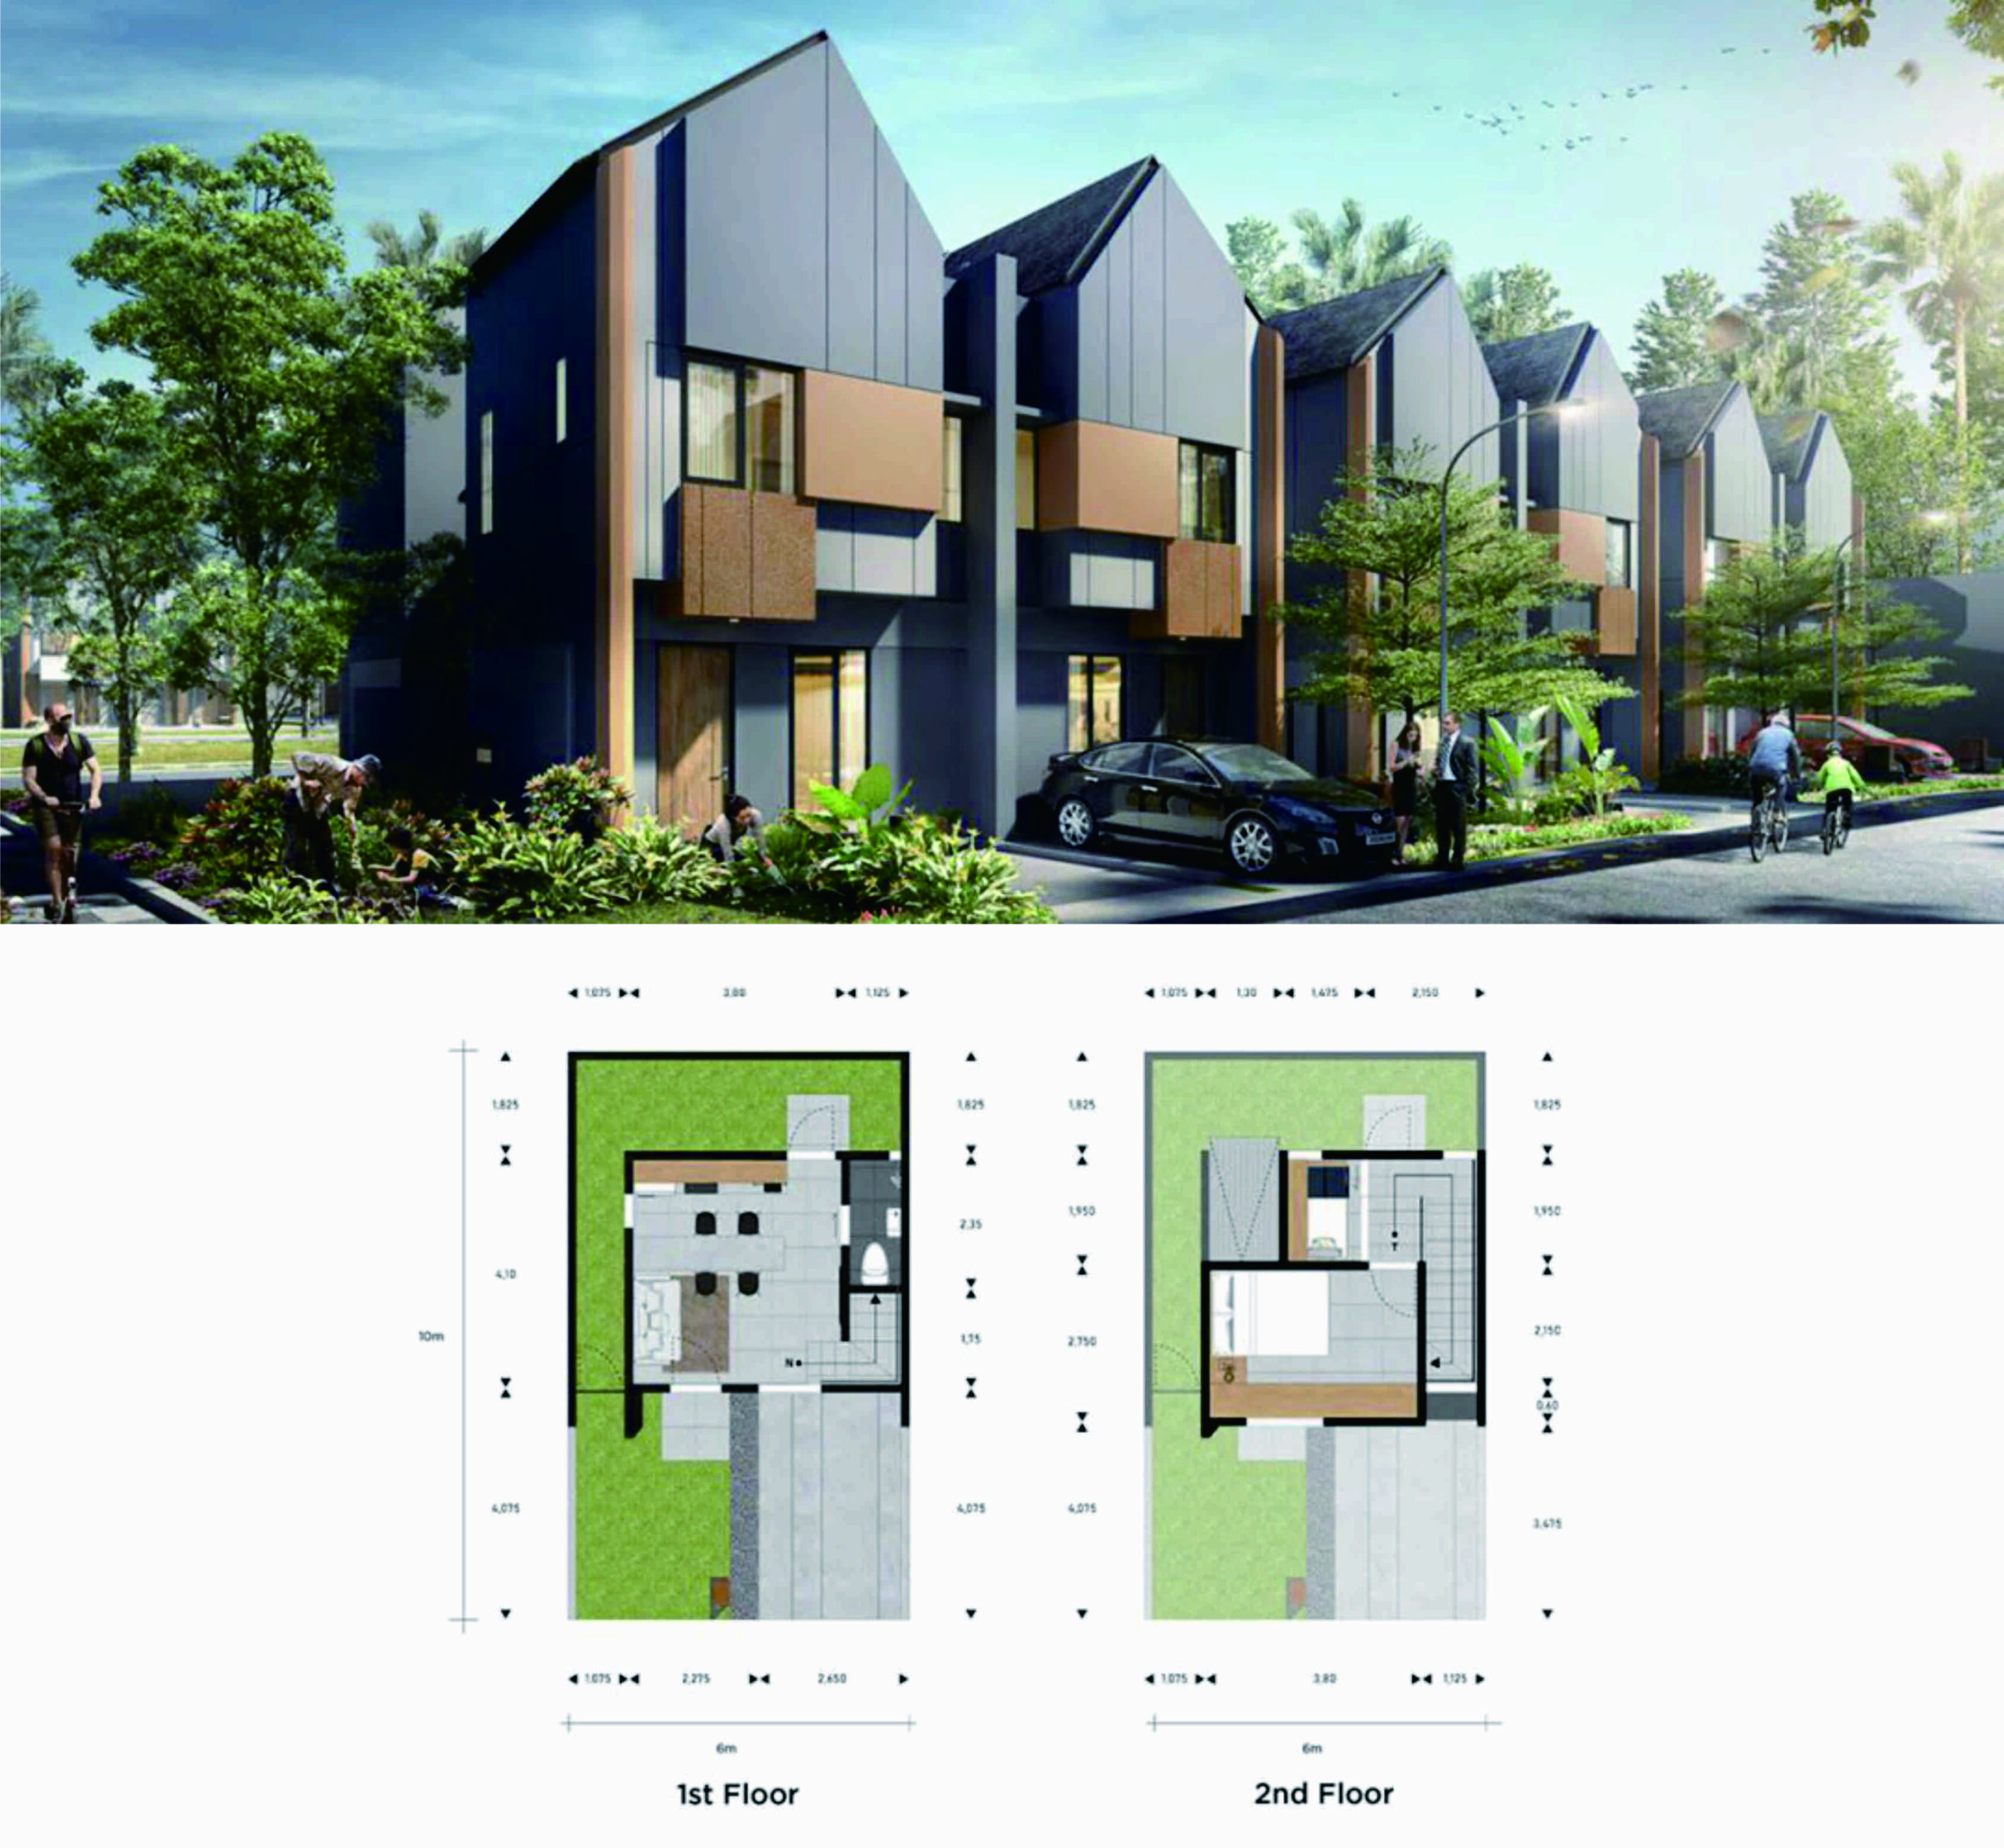 Adhi City Sentul Cluster Bumi Anvaya – Rumah Modern Dijual di Kawasan Sentul Bogor